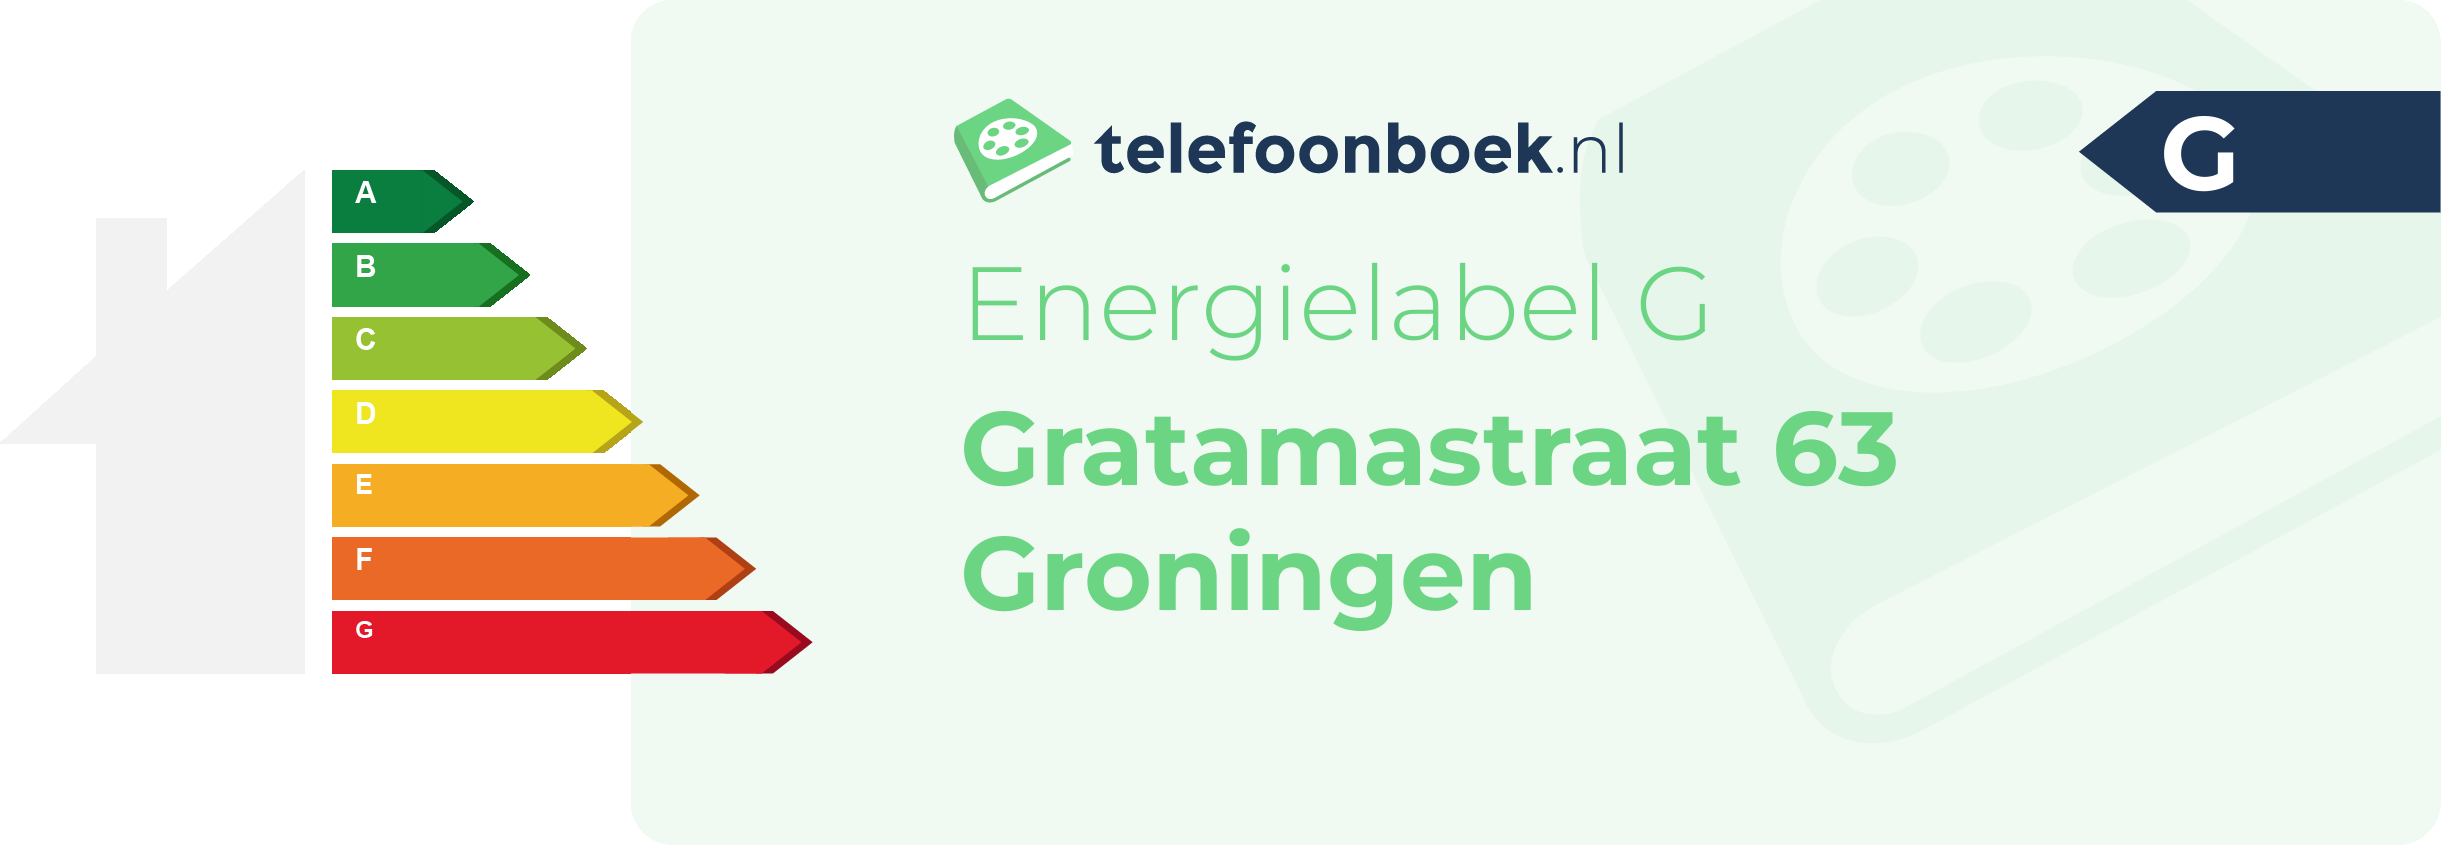 Energielabel Gratamastraat 63 Groningen